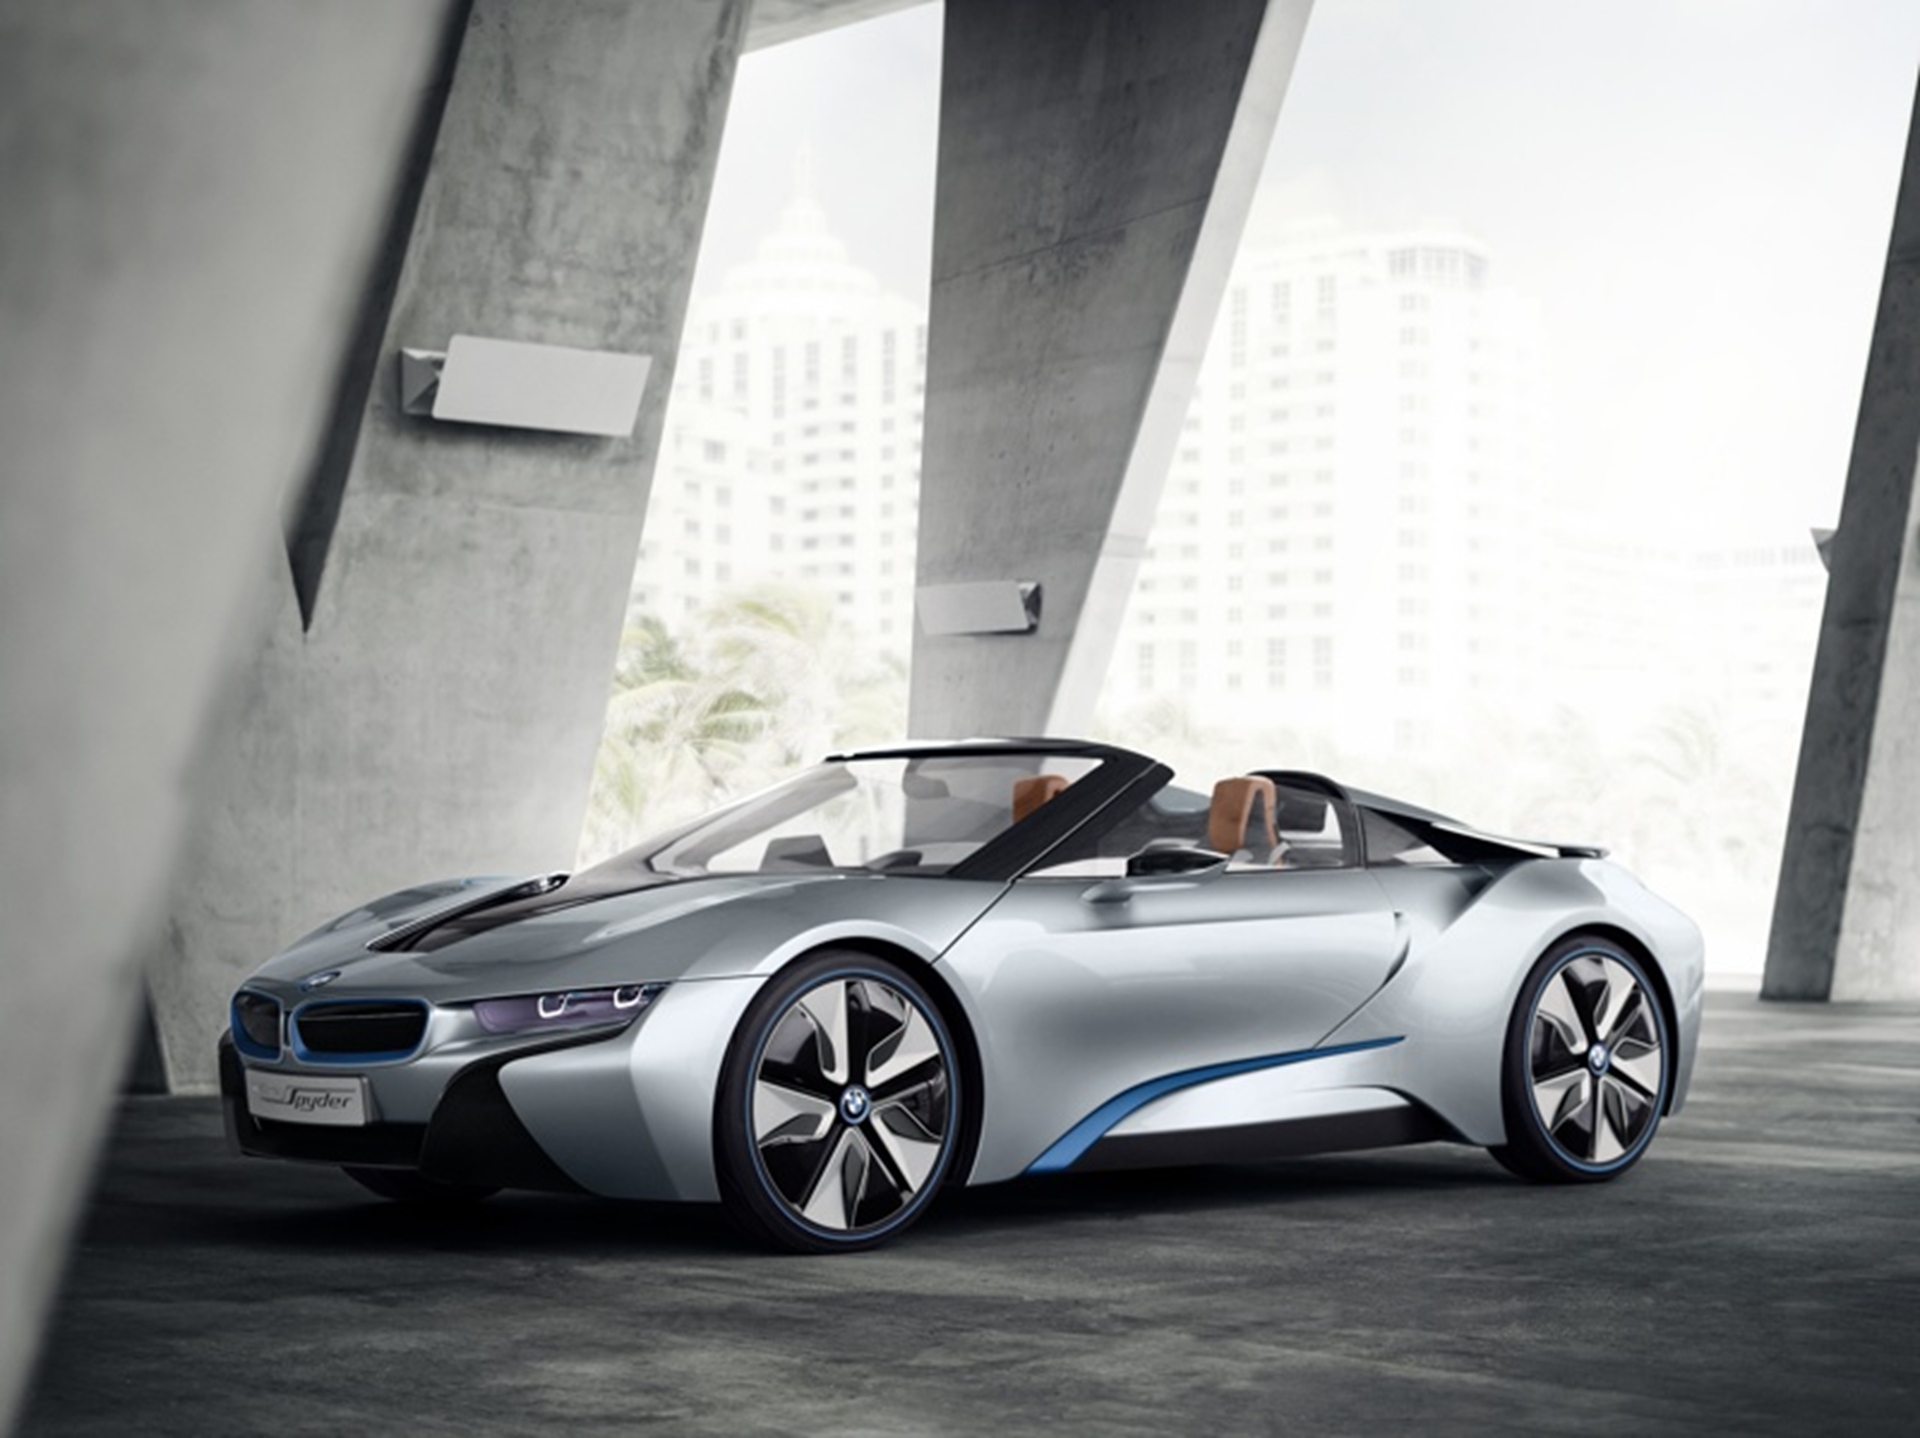 The BMW i concept – Spyder